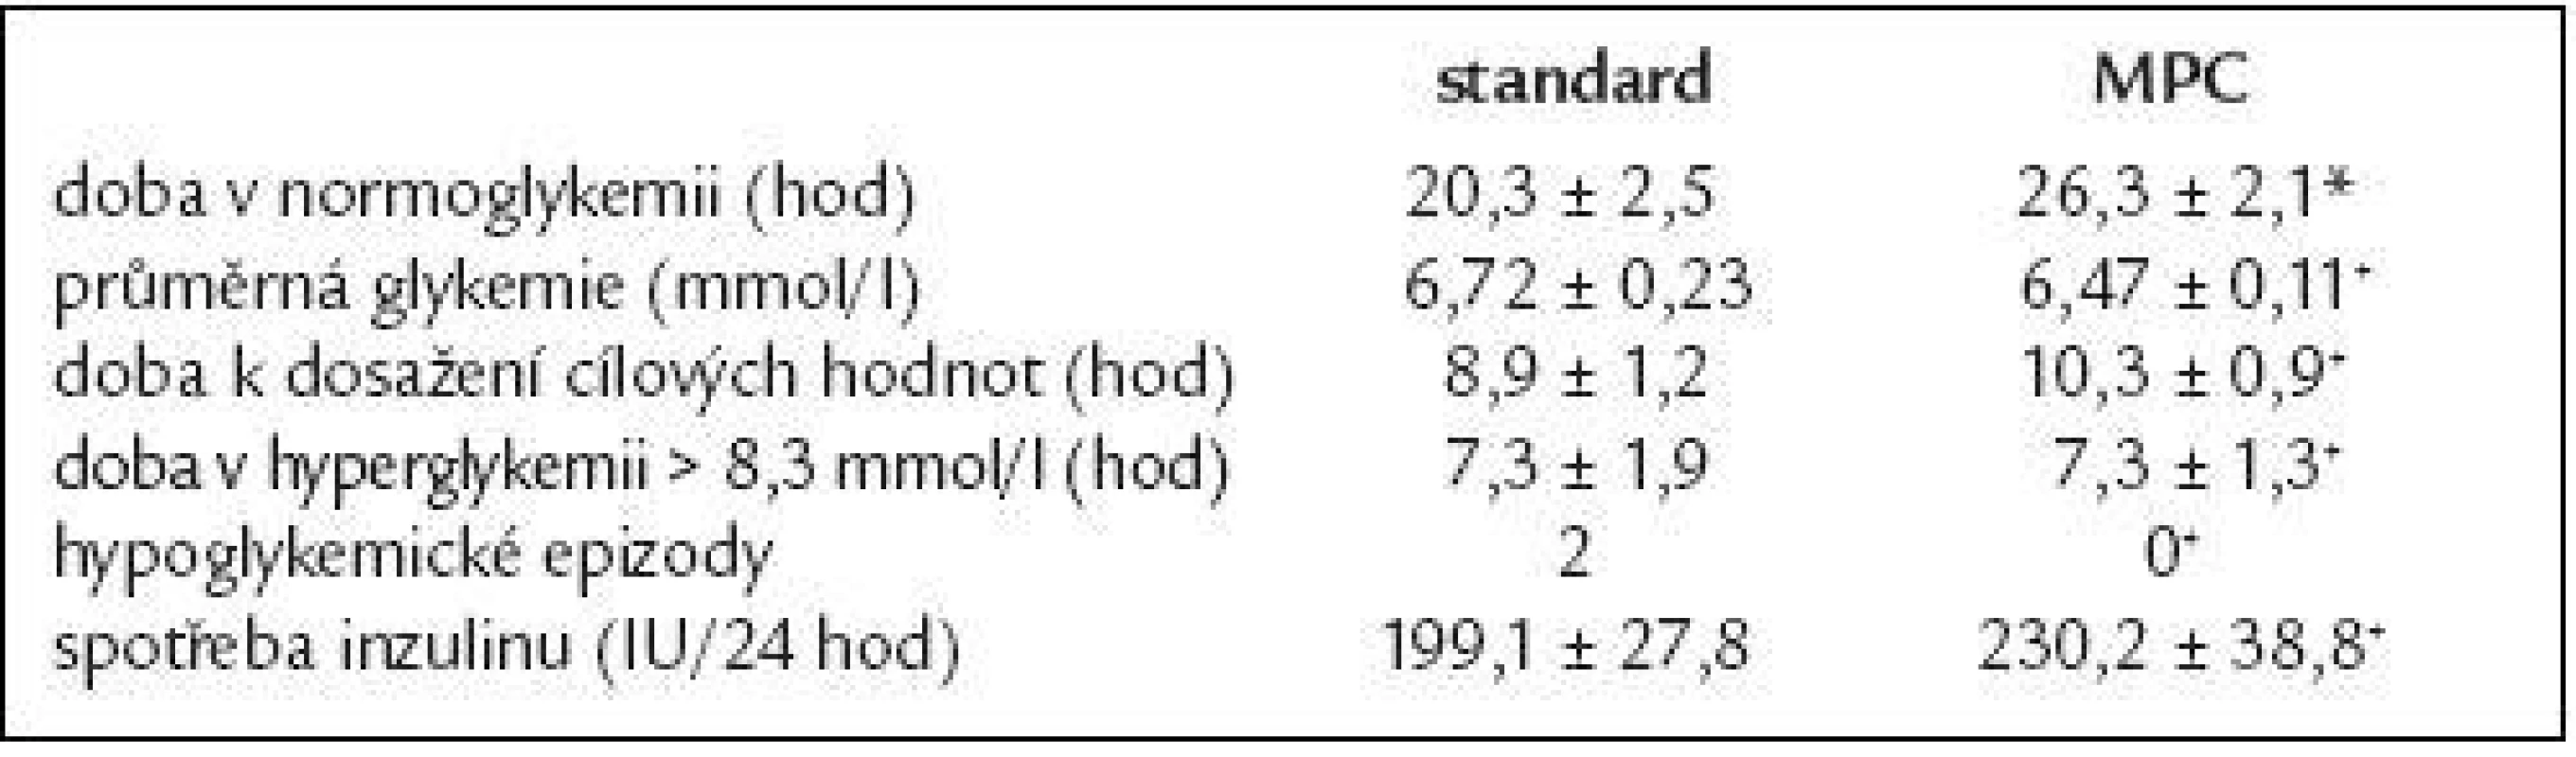 Srovnání sledovaných parametrů těsné kontroly glykemie při použití standardního protokolu a počítačového algoritmu (*p = 0,02, +p &gt; 0,05)